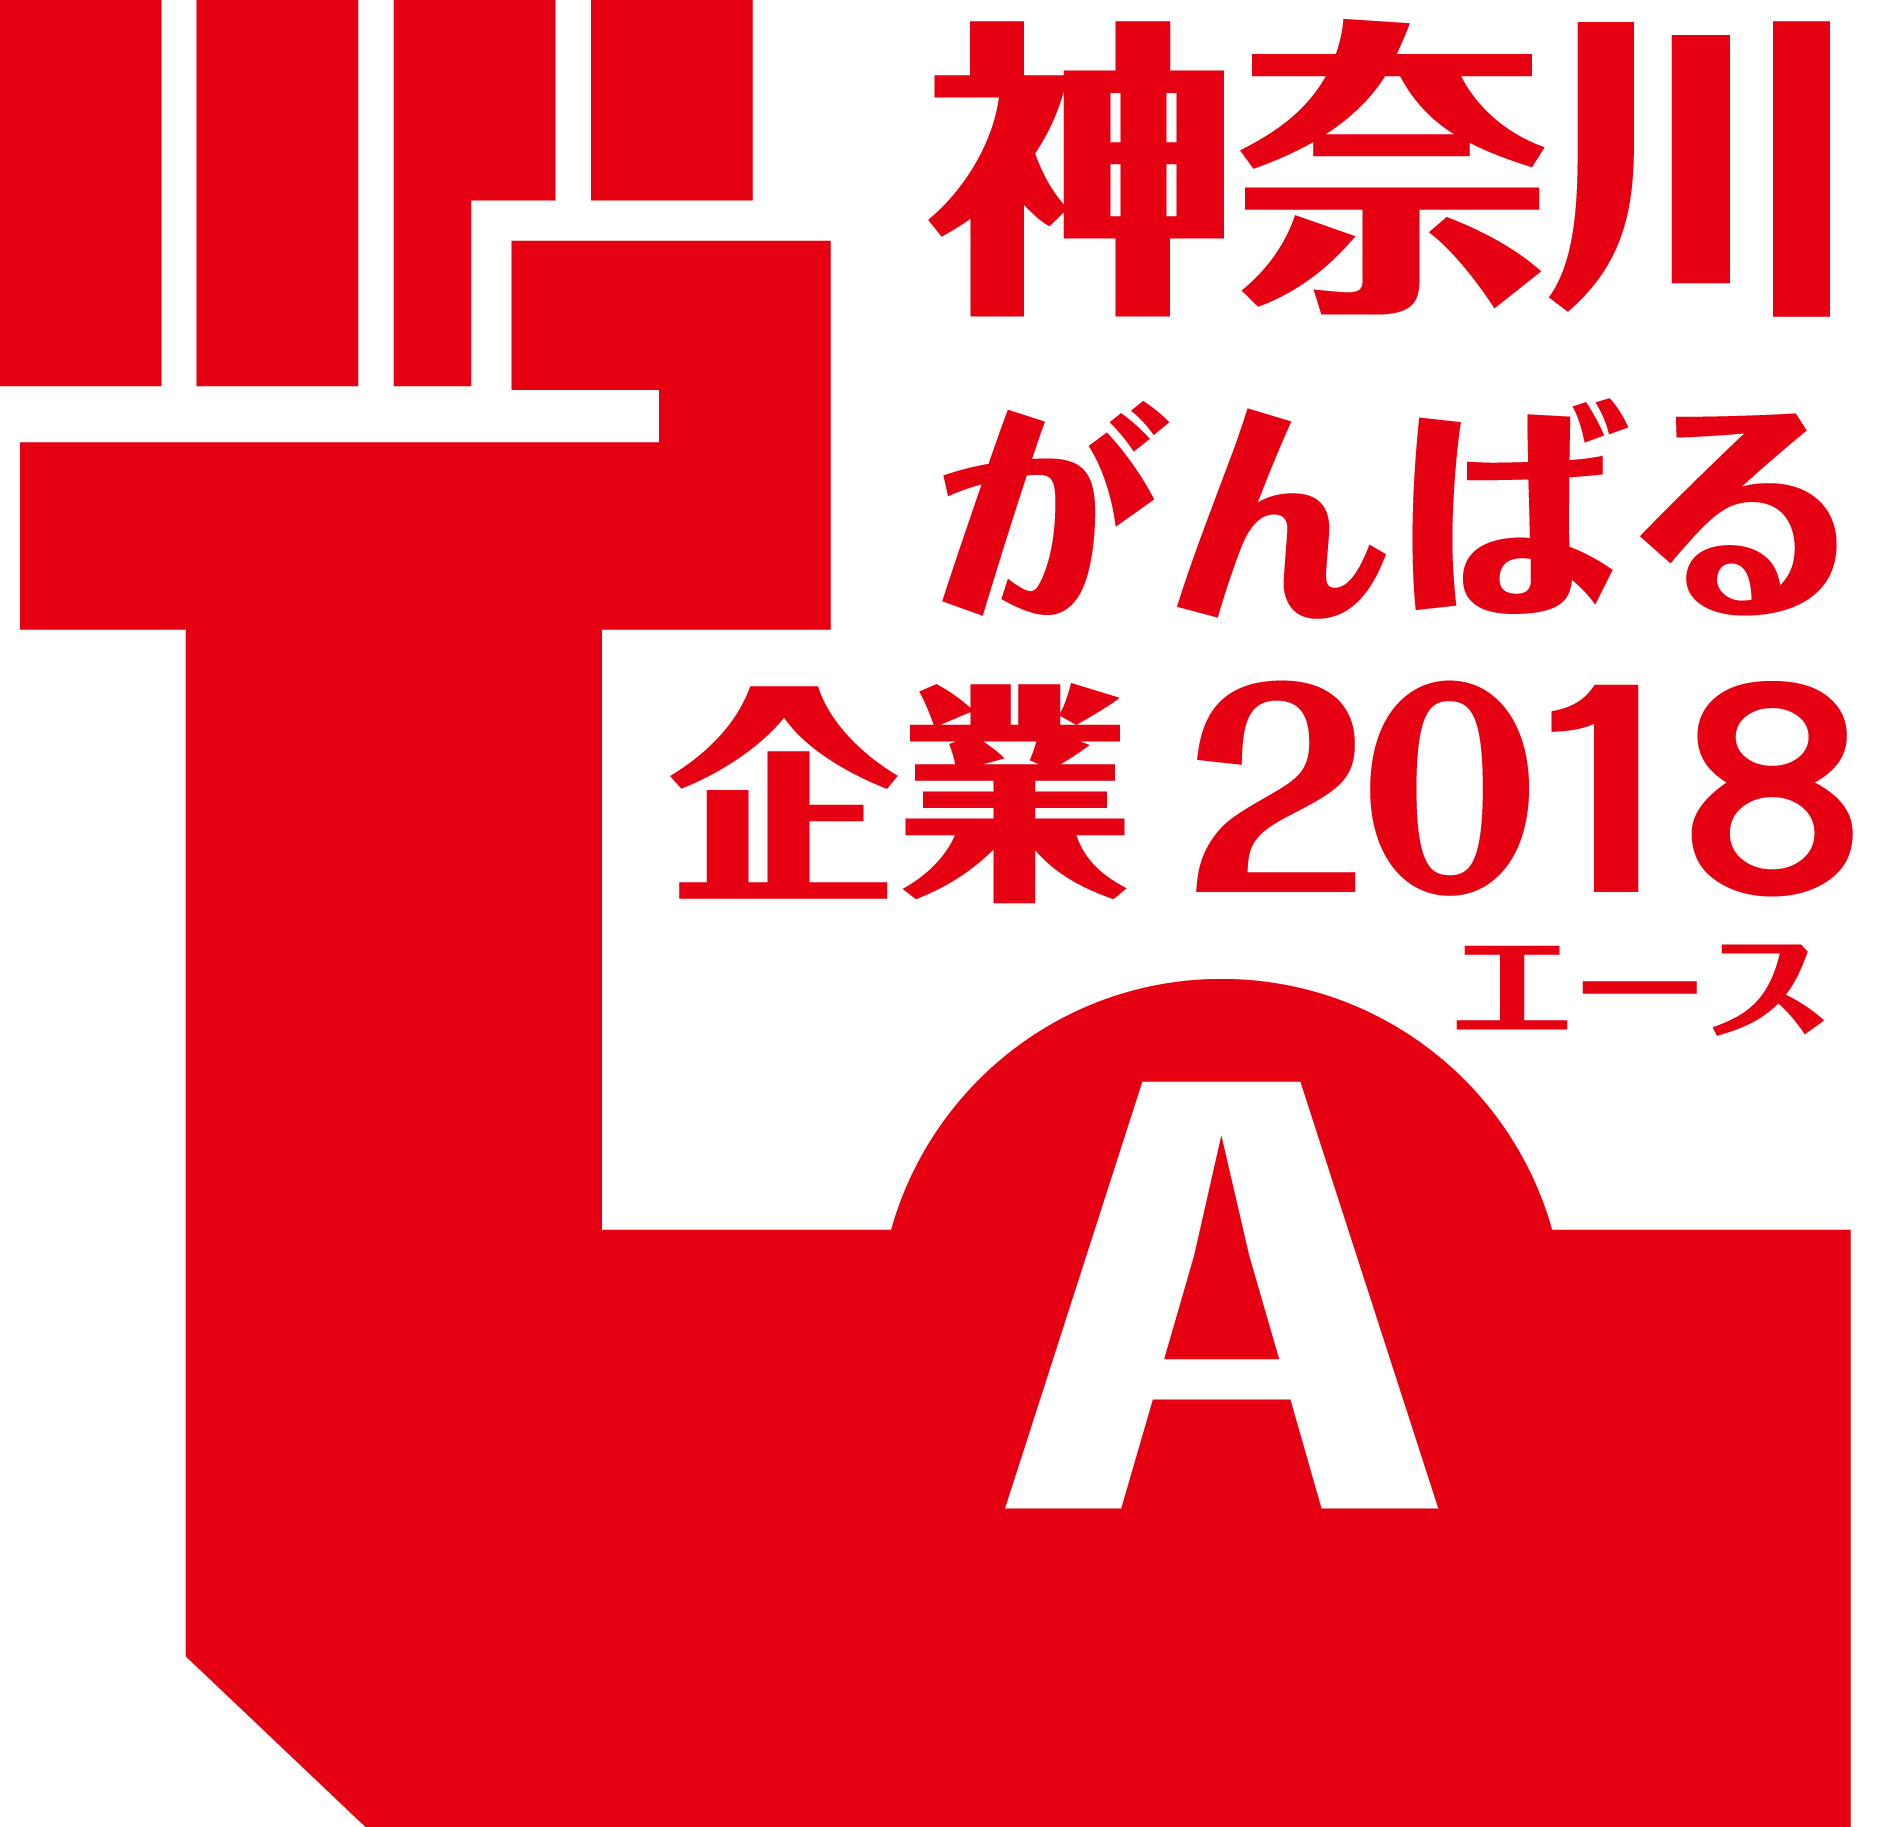 神奈川がんばる企業2018　エース （神奈川県）に認定されました。